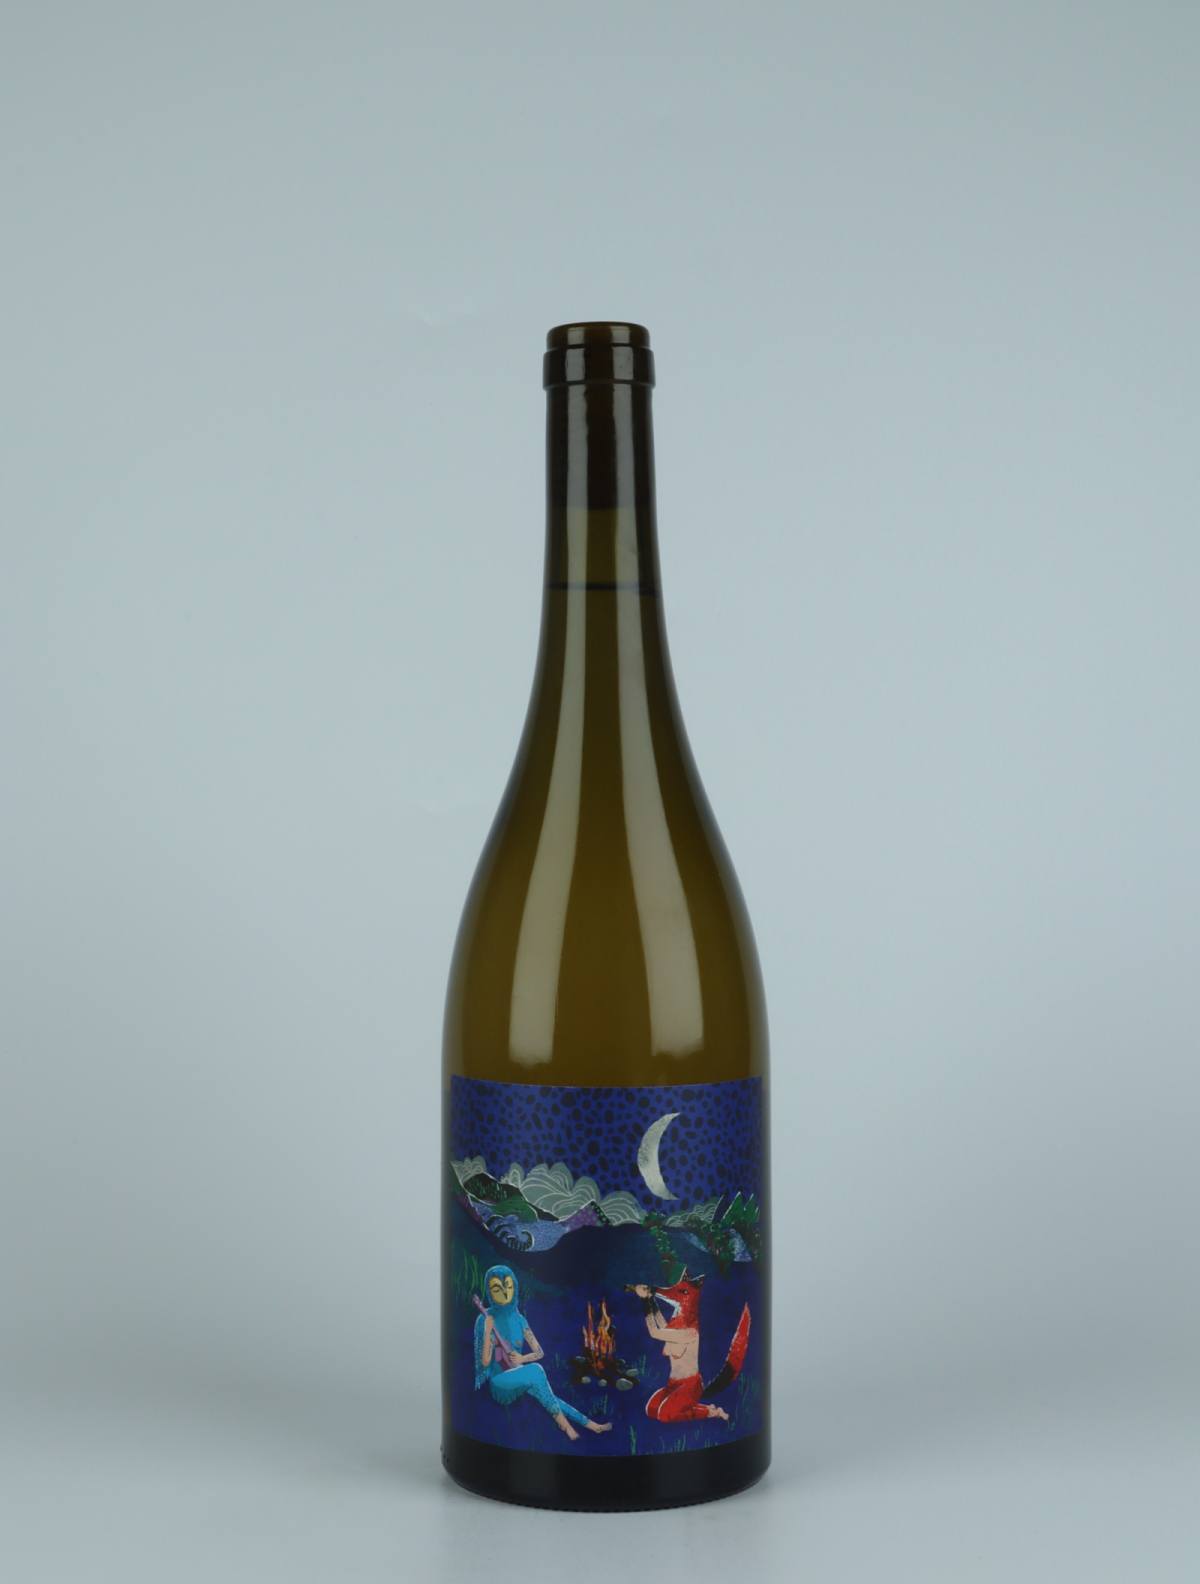 A bottle 2021 Luna Nueva Orange wine from Kindeli, Nelson in New Zealand